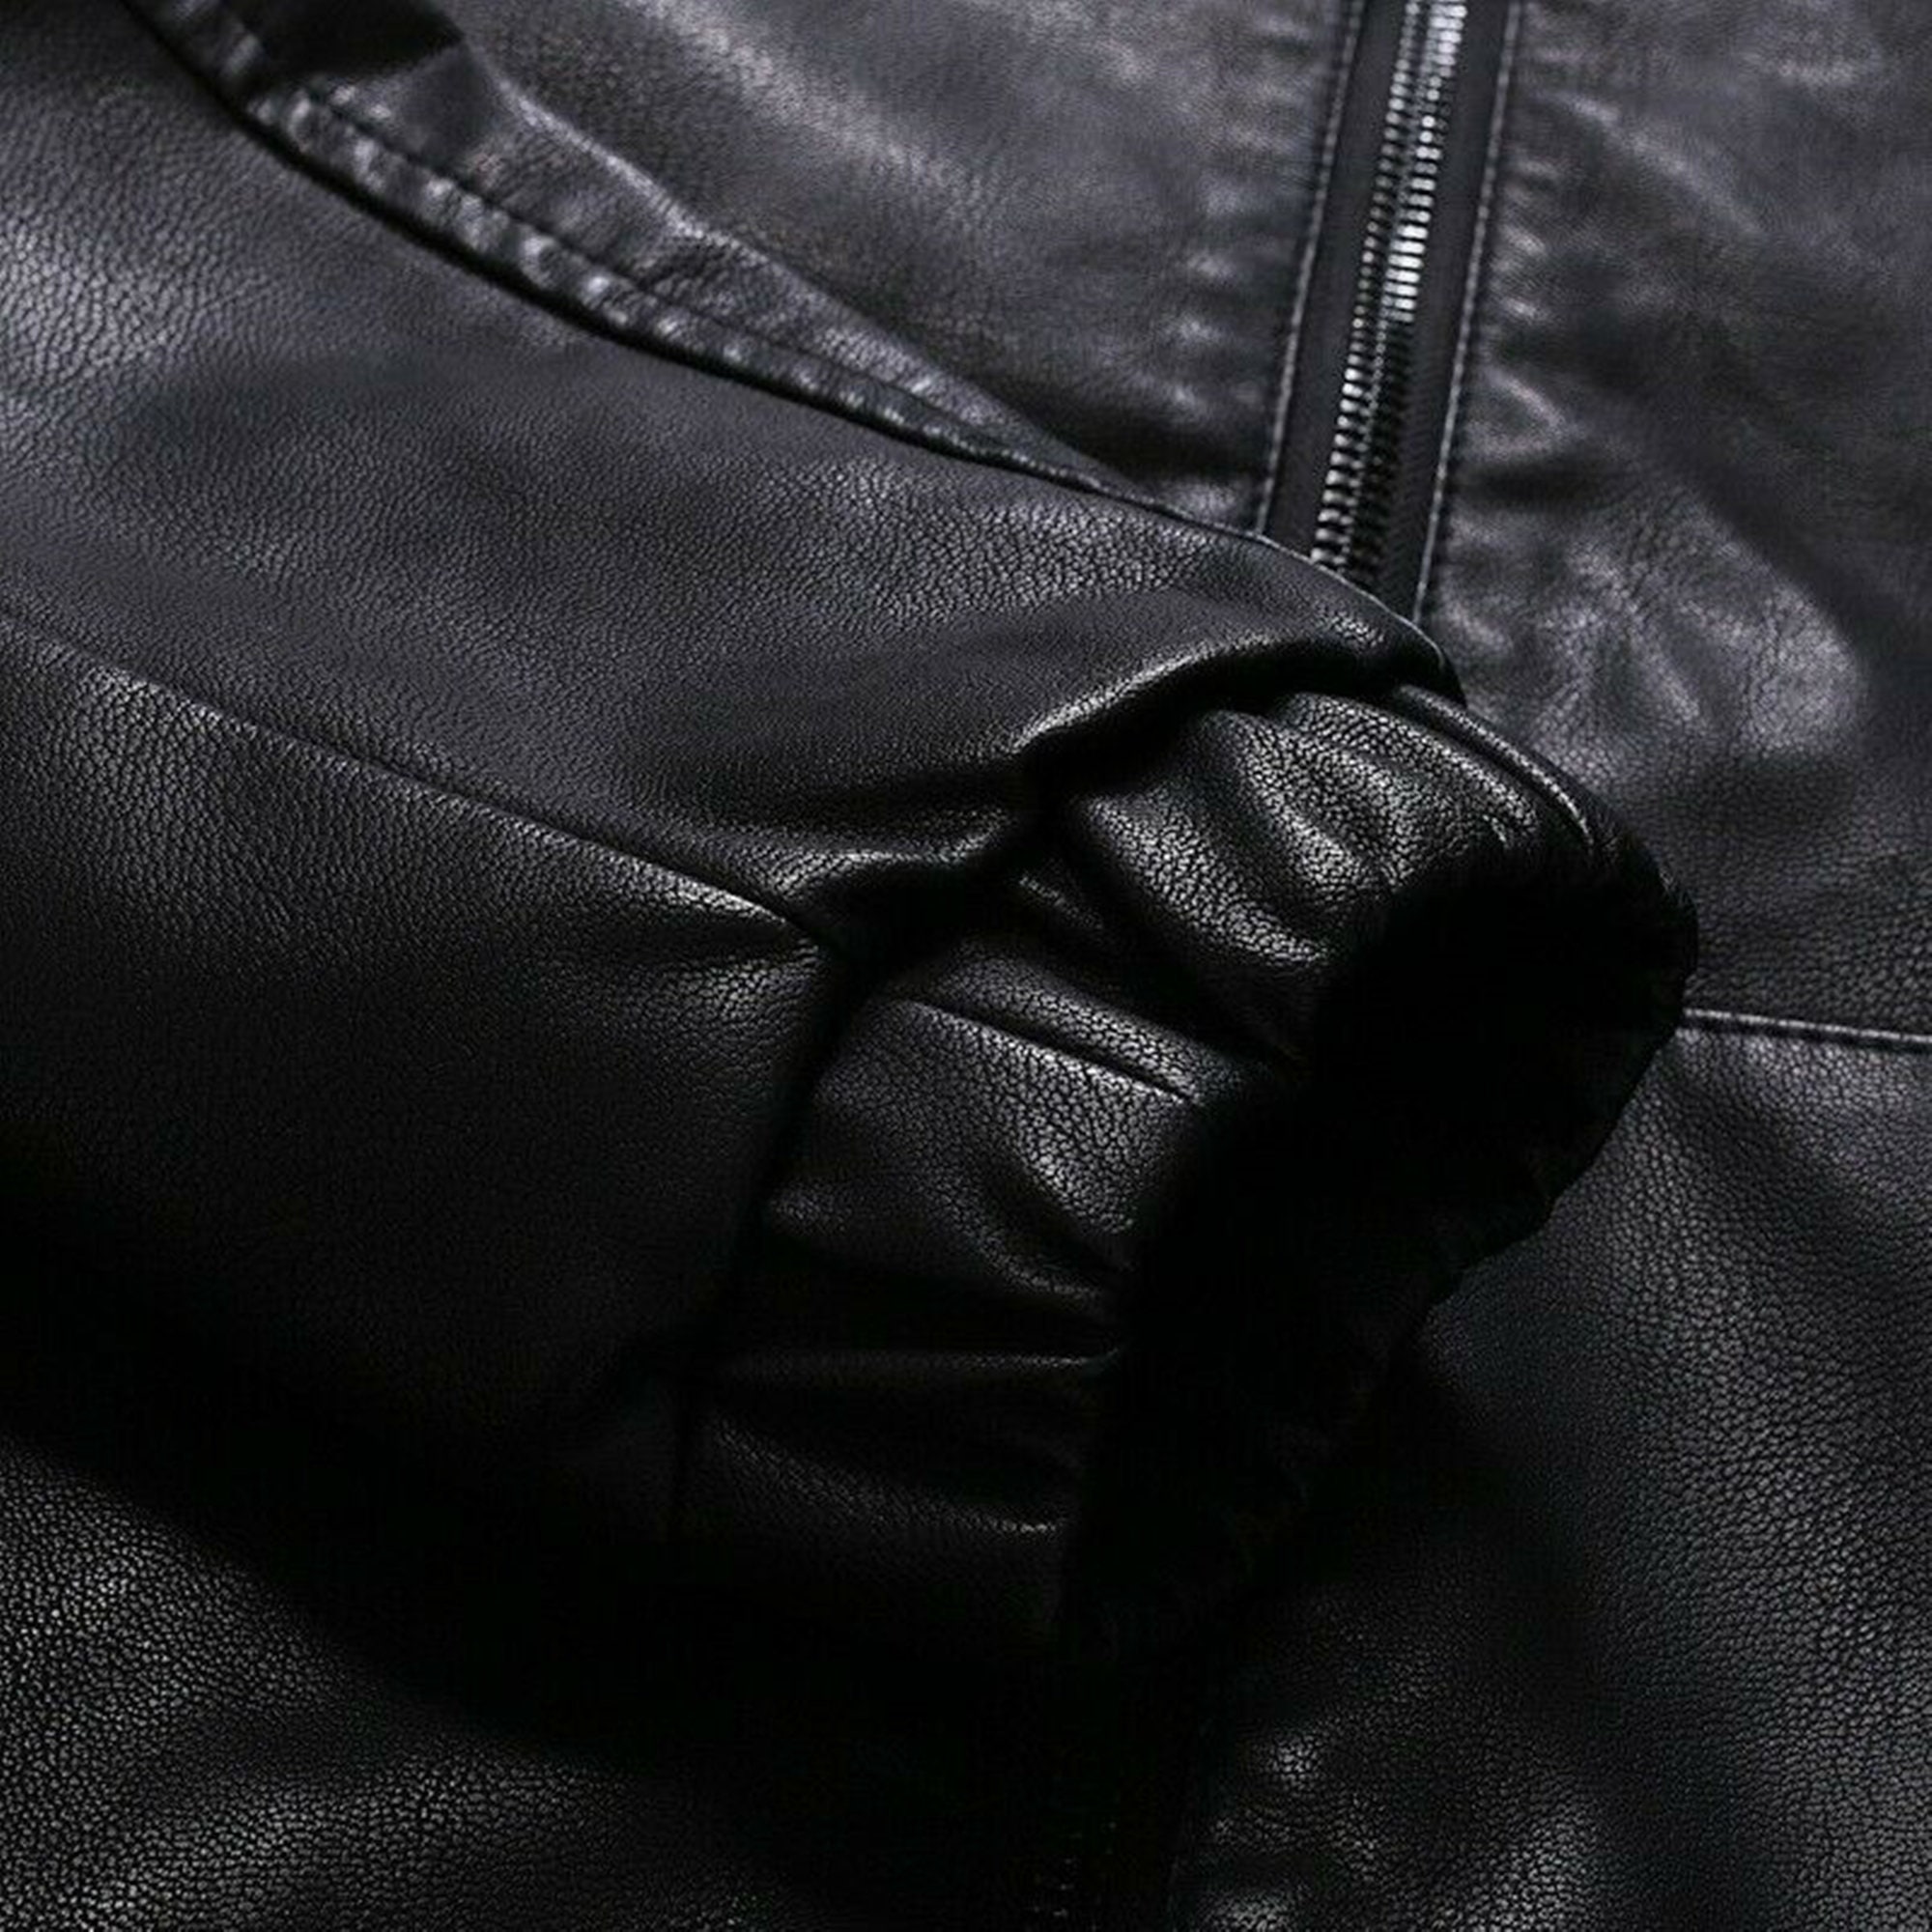 Mens Genuine Black Hoodie Sheepskin Leather Jacket | Etsy